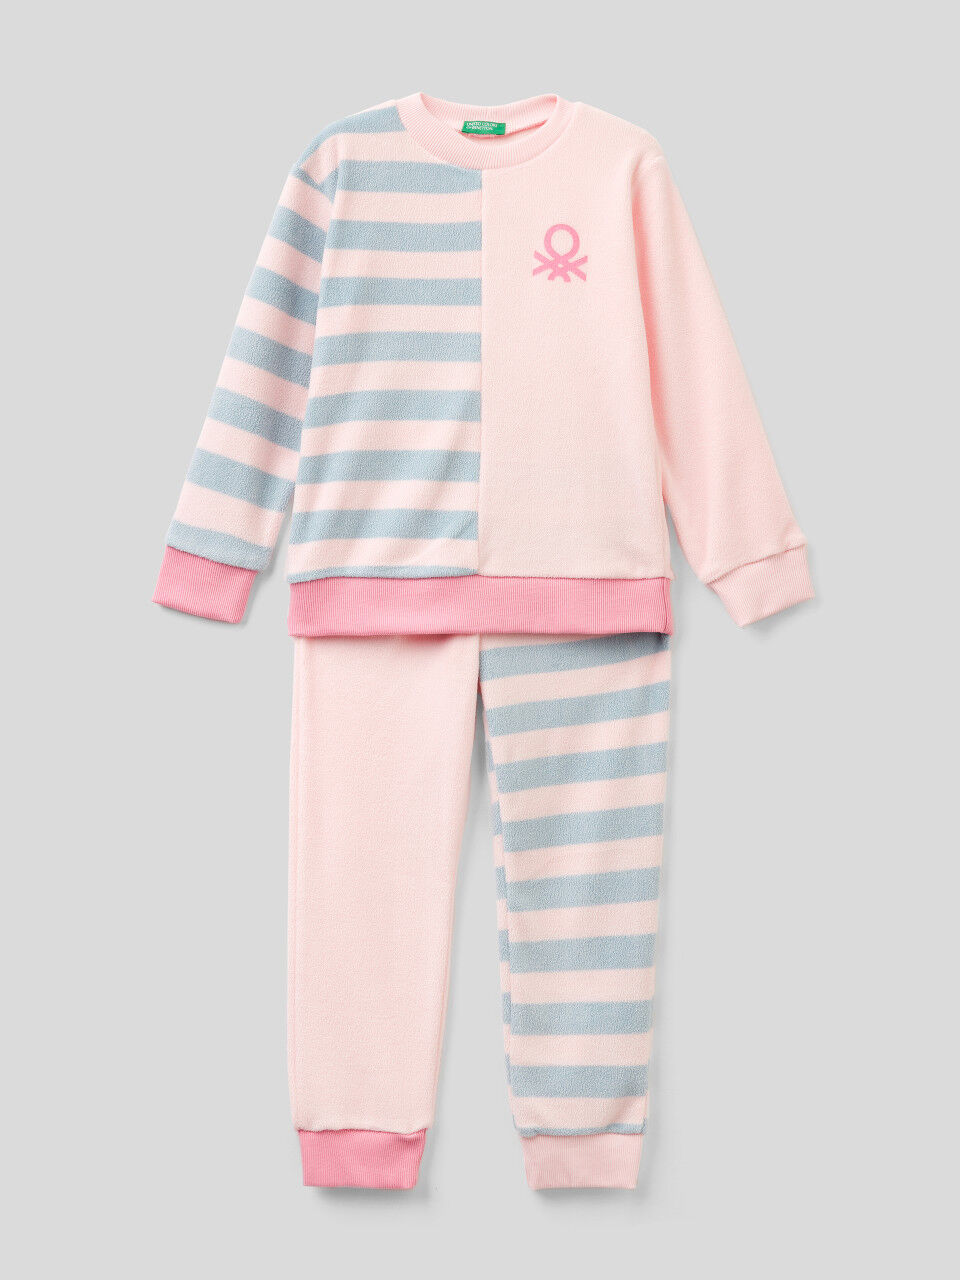 Striped pyjamas in fleece